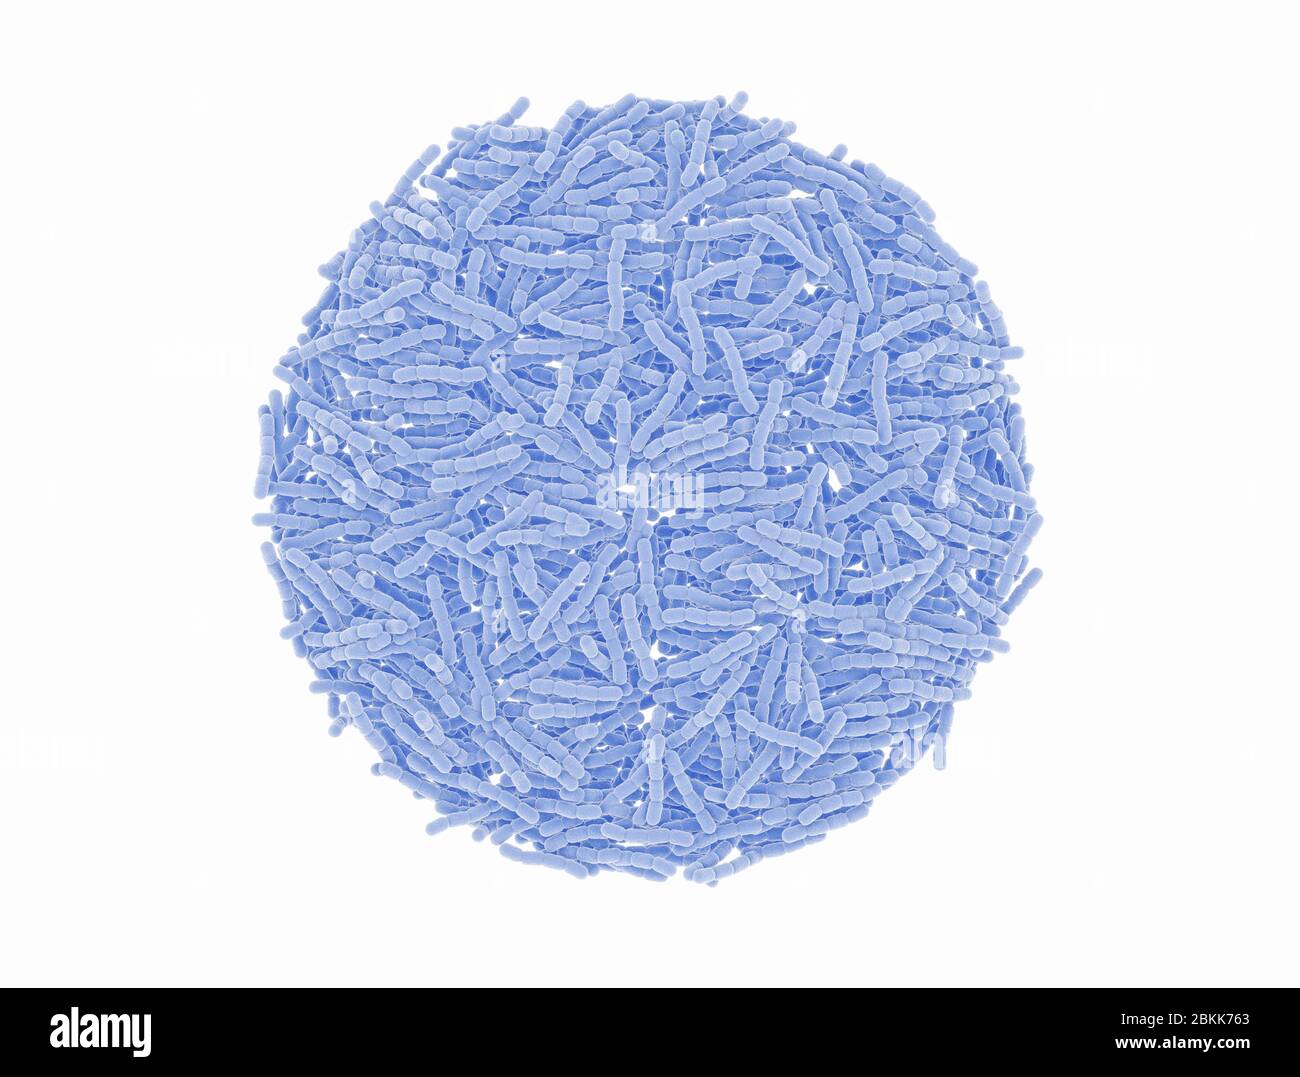 Cellule batteriche di Streptococcus pneumonia. Microscopico. Isolato su bianco. Foto Stock